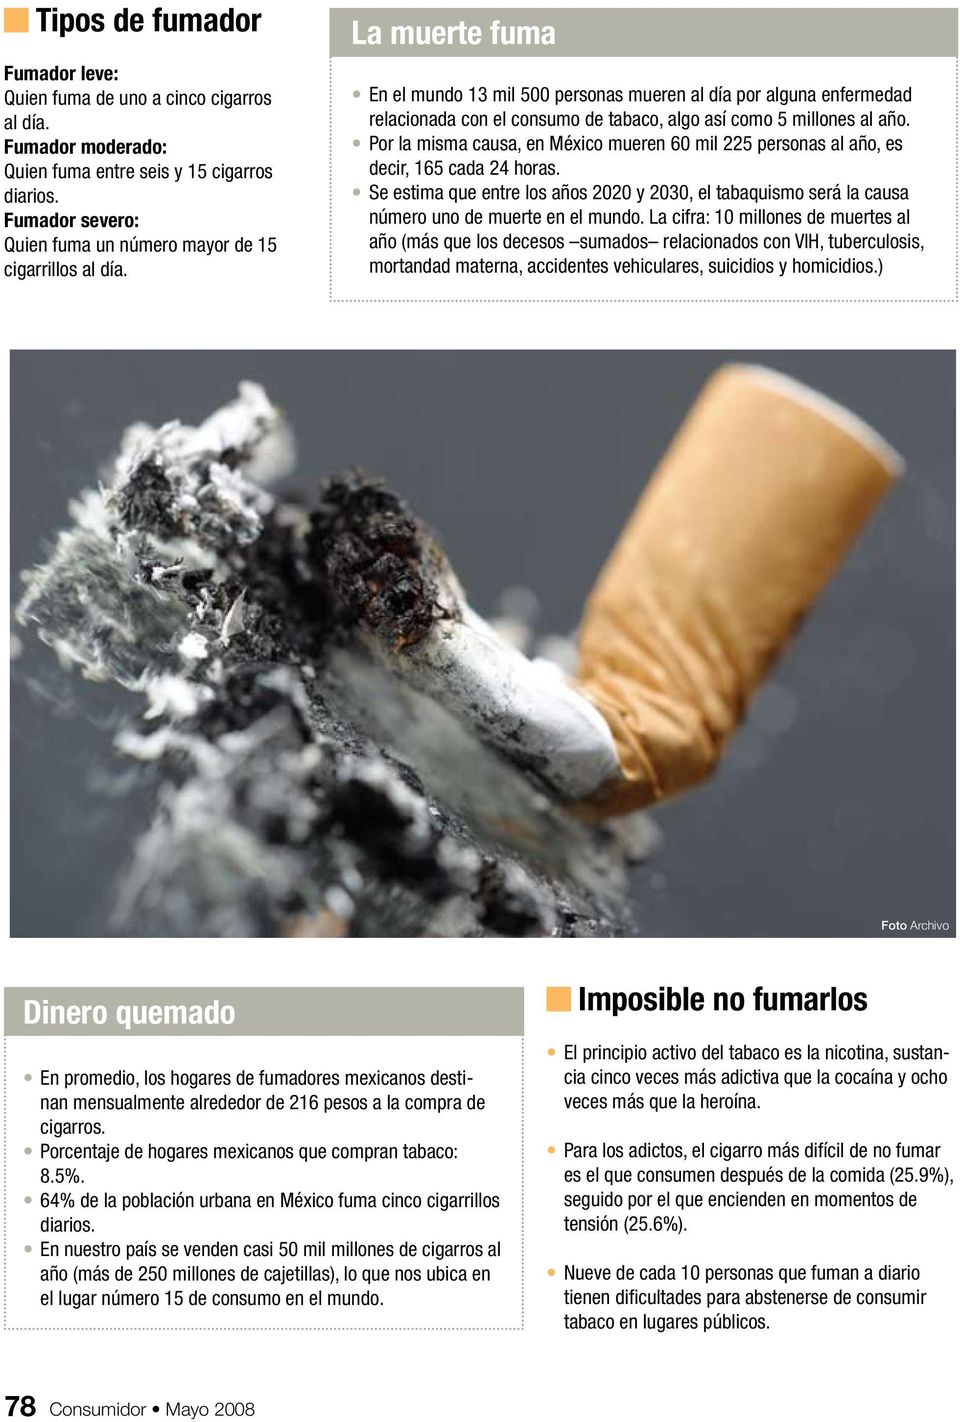 La muerte fuma En el mundo 13 mil 500 personas mueren al día por alguna enfermedad relacionada con el consumo de tabaco, algo así como 5 millones al año.